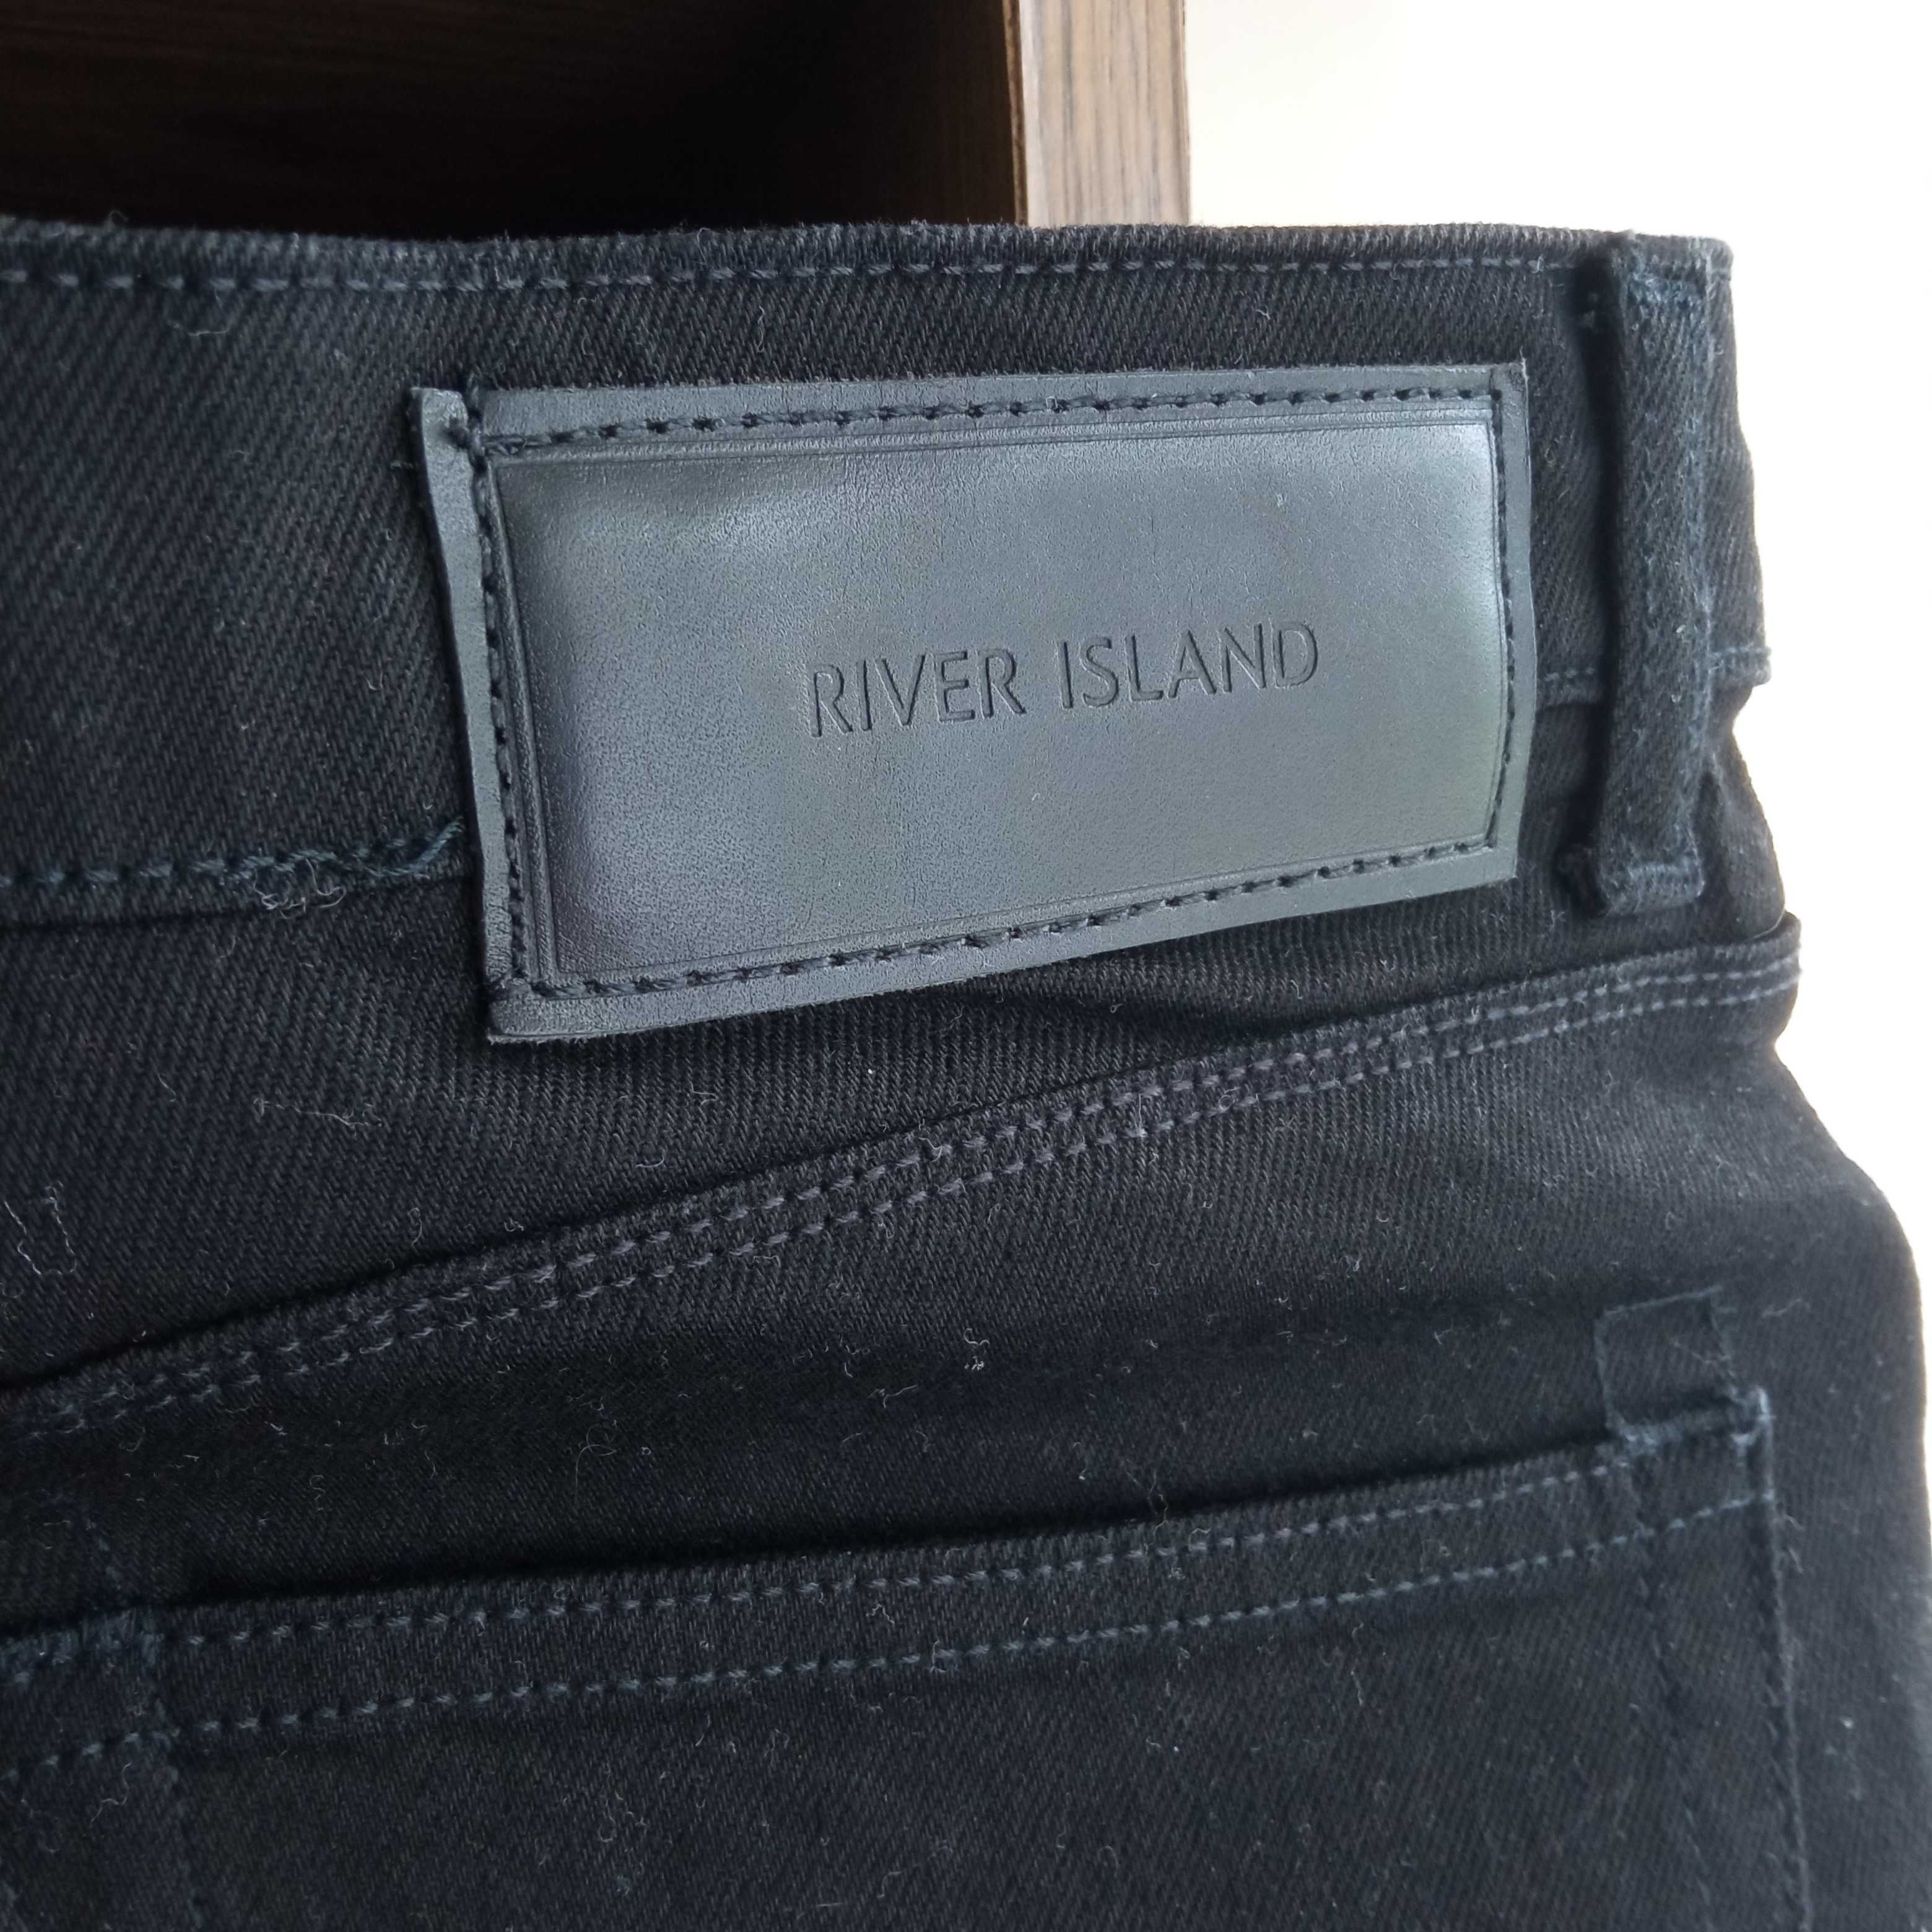 Nowe jeansowe czarne szorty męskie r. 32 River Island